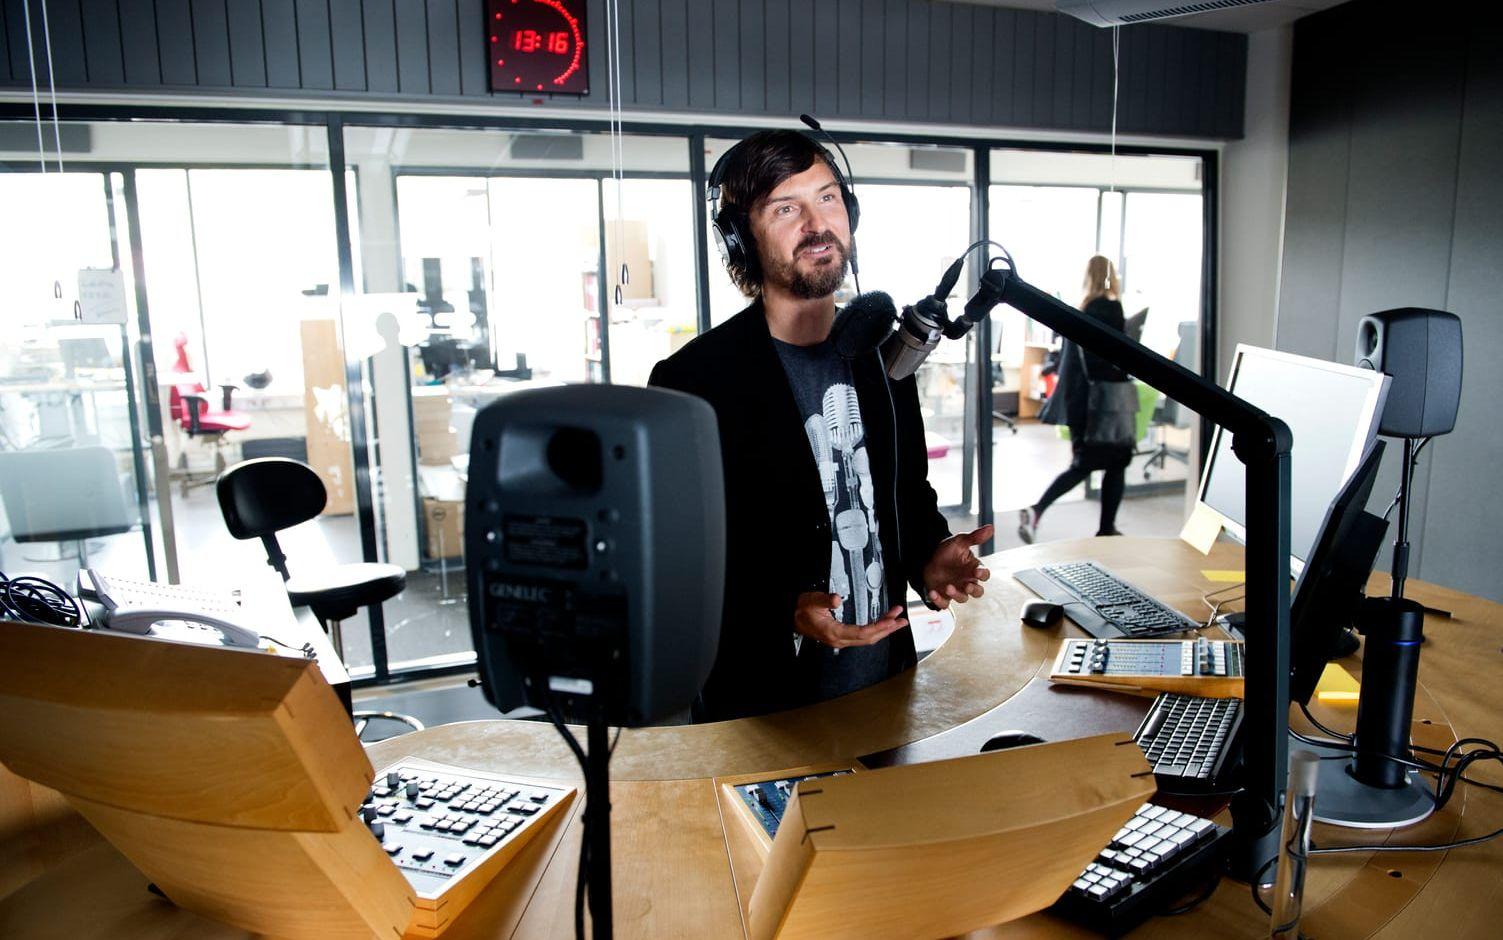 Känd röst. Morgan Larsson, som är uppvuxen i Trollhättan, är en känd radioröst. Han har också gett ut böckerna Radhusdisco och Det opålitliga hjärtat. Bild: Kent Eng